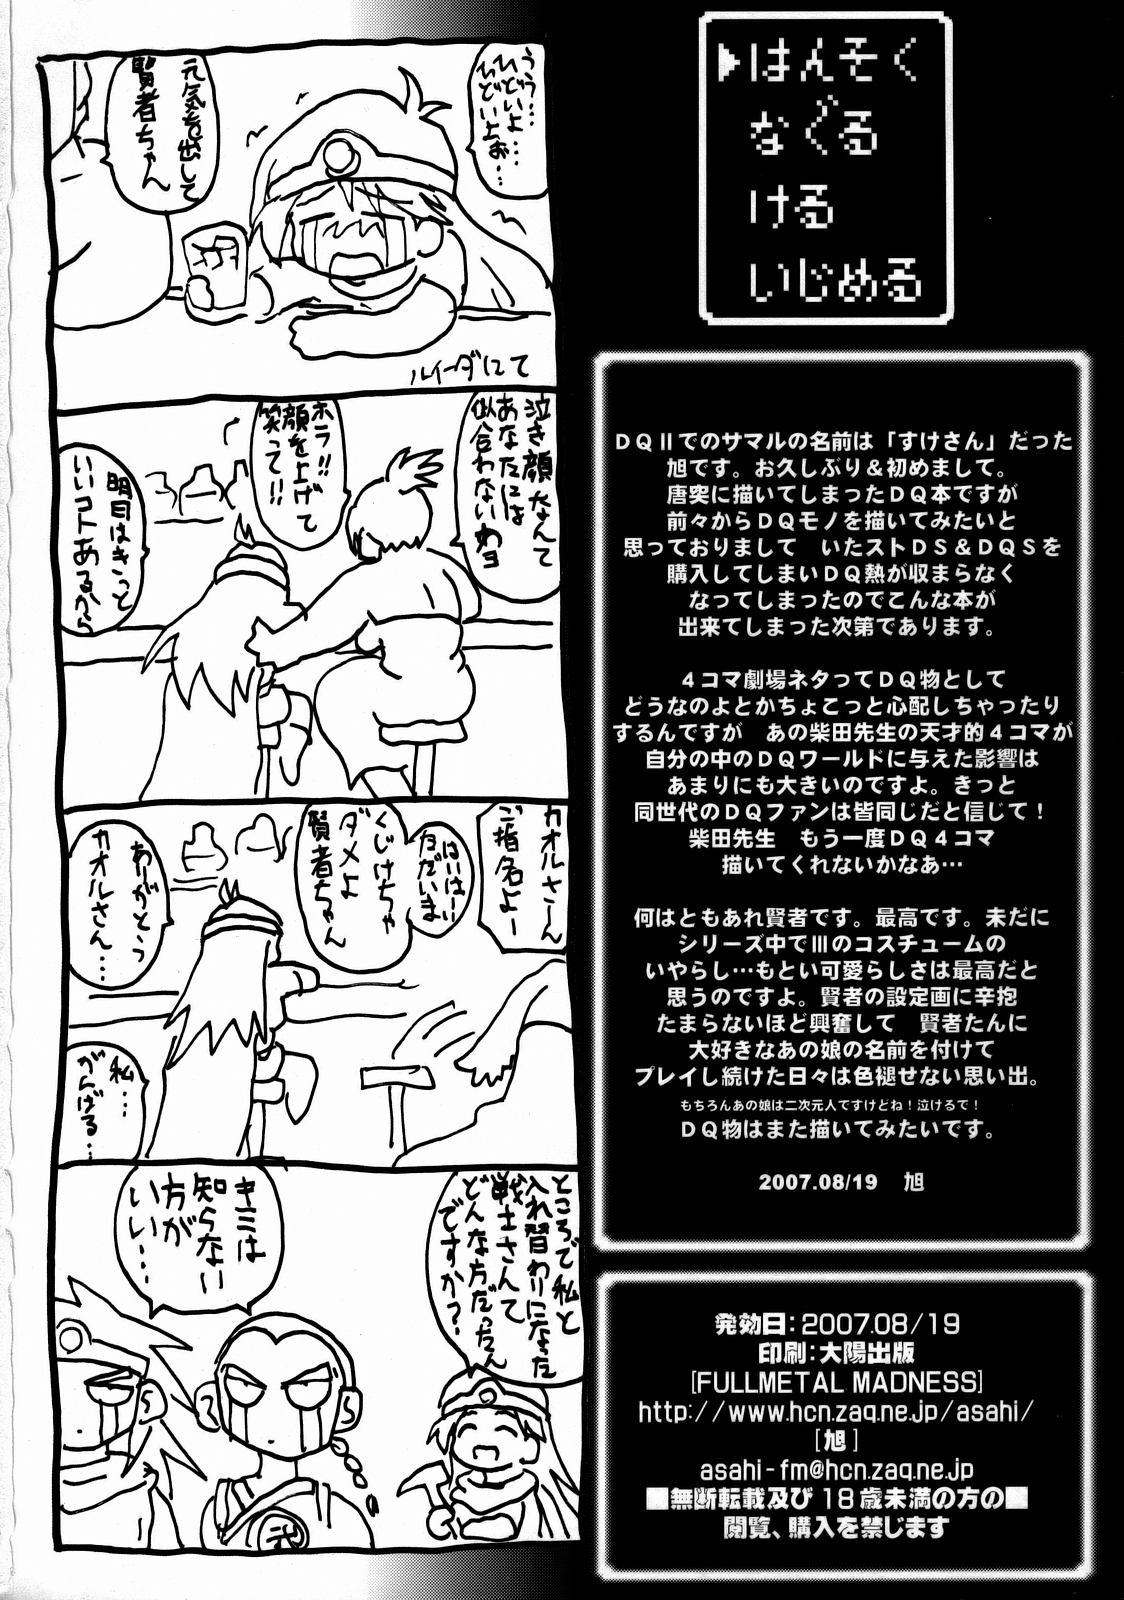 Blowjob Hansoku Naguru Keru Ijimeru - Dragon quest iii Porn Star - Page 25